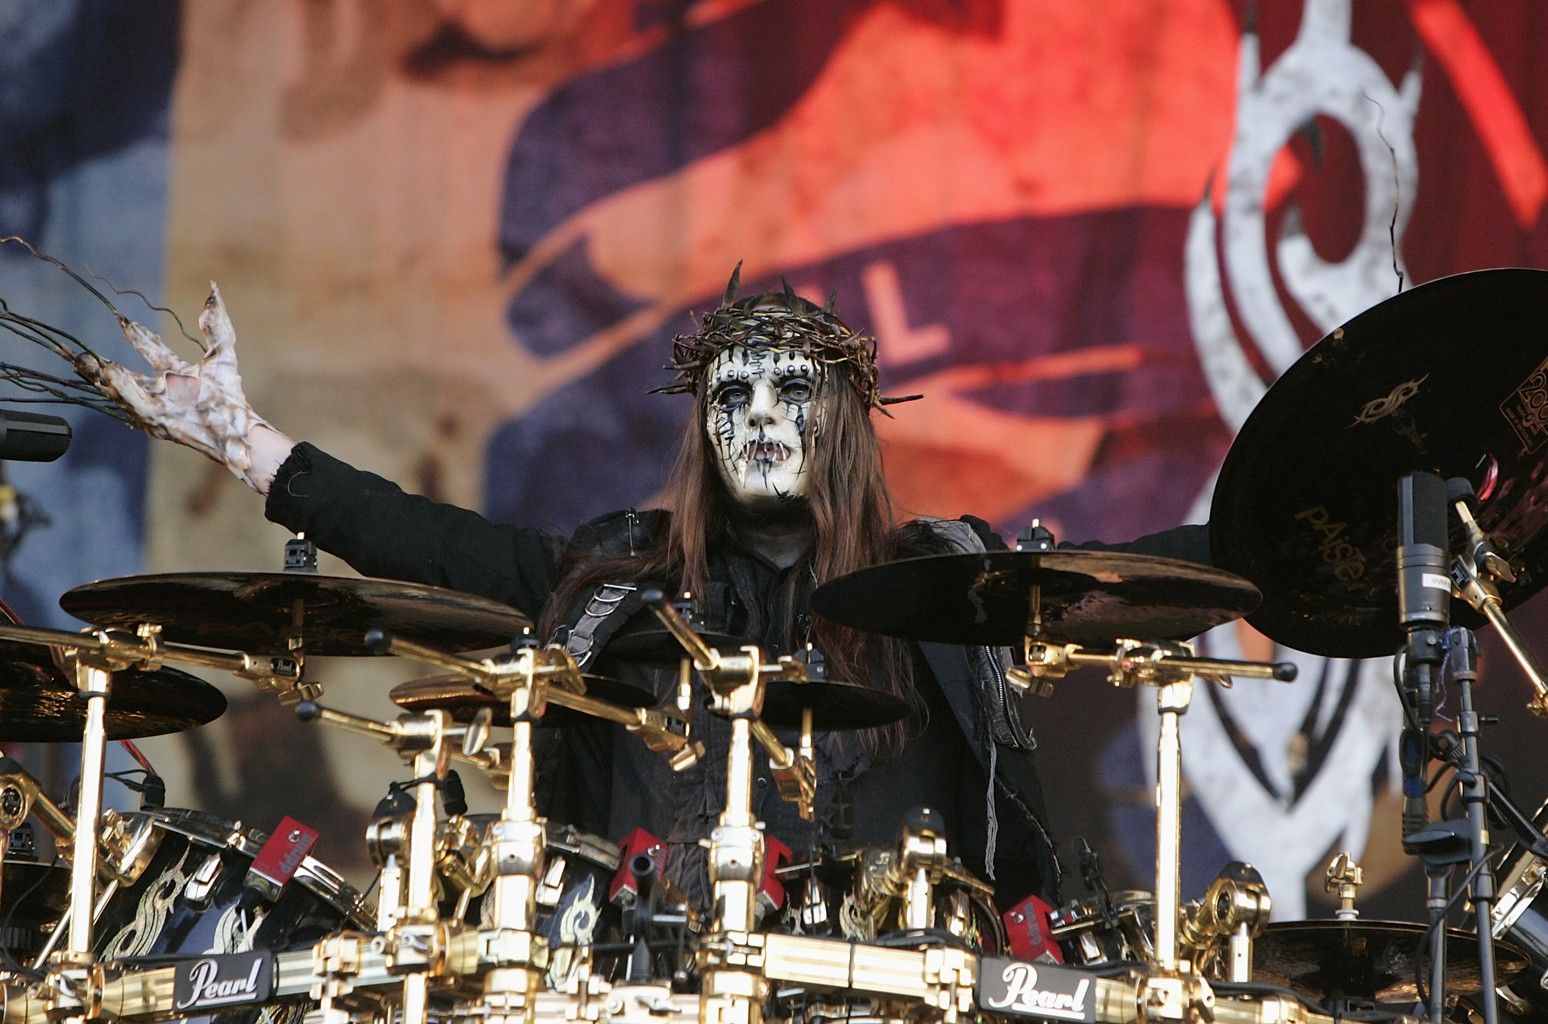 Joey Jordison, founding drummer of heavy metal band Slipknot, dies at 46